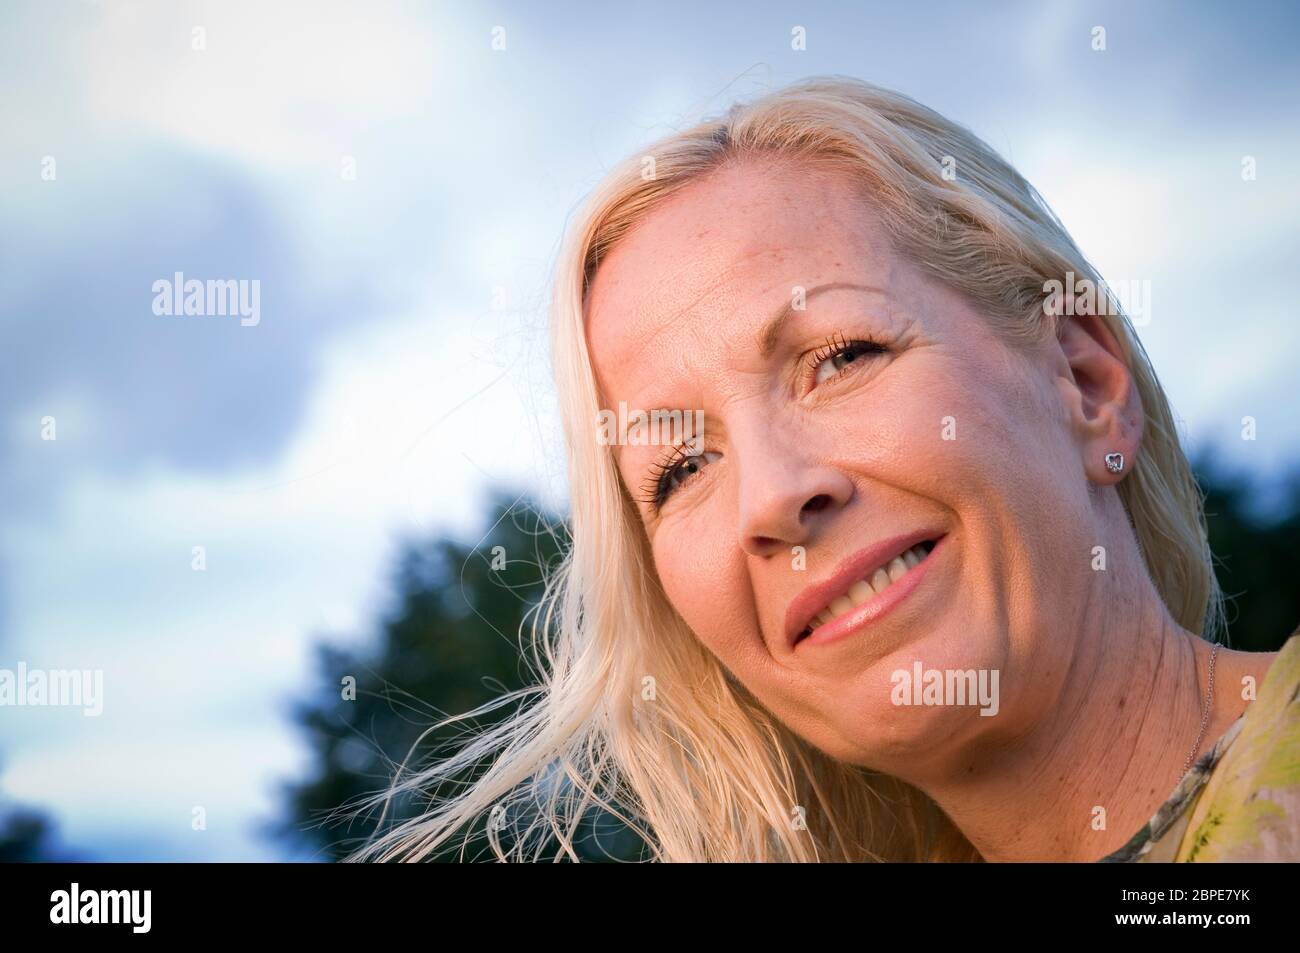 Kopf-Porträt Einer blonden Frau Mittleren Alters in Schrägansicht Freundlichn in Die Kamera lächelnd Stockfoto